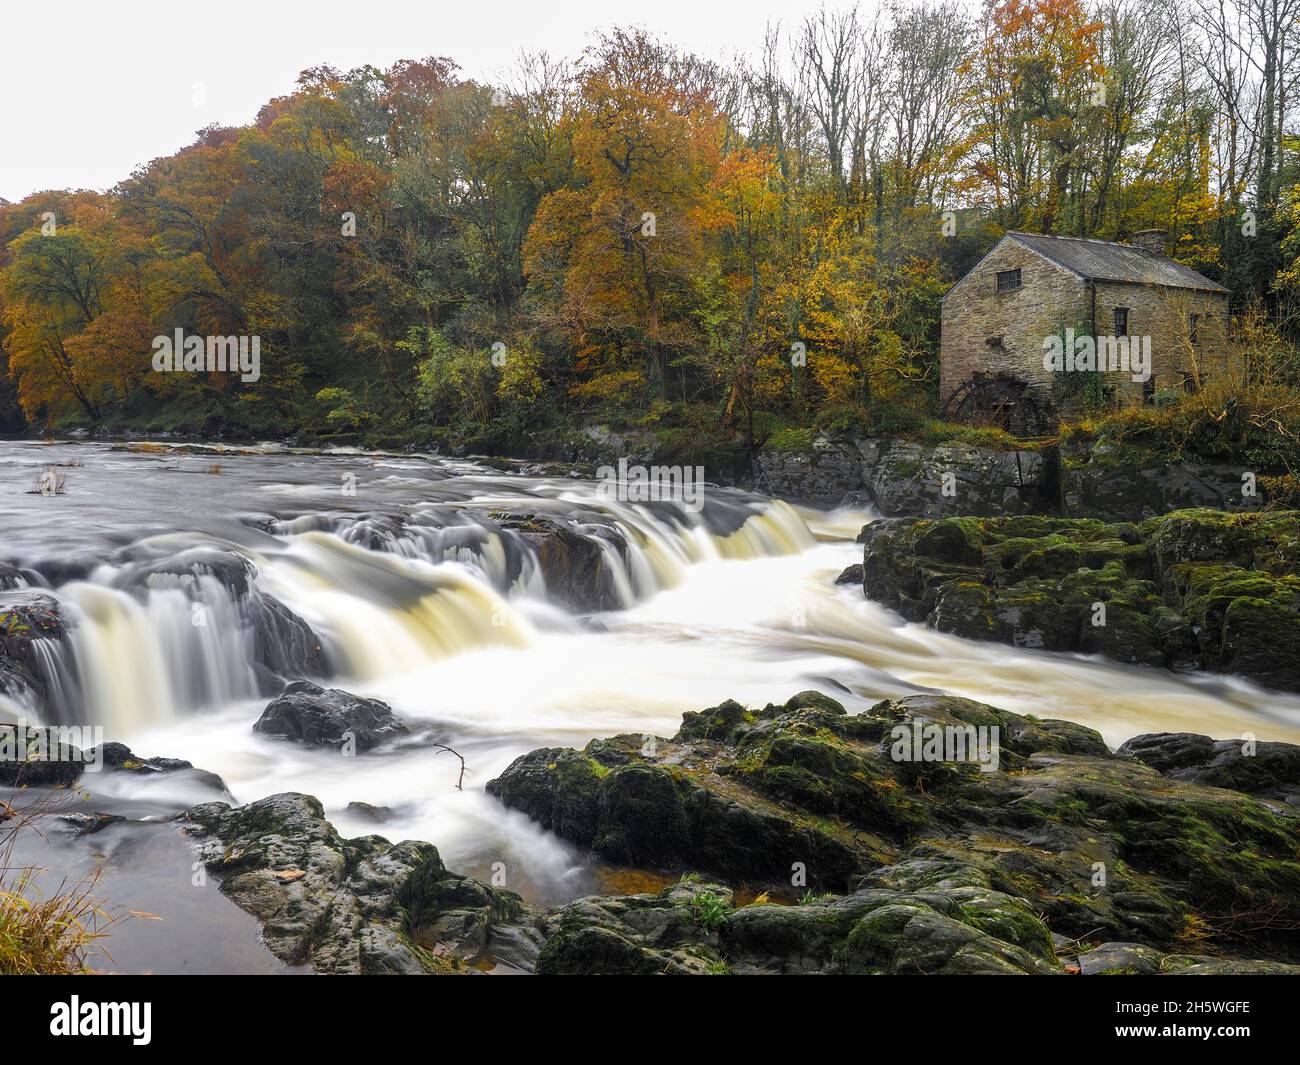 Water falls at Cenarth, Wales Stock Photo